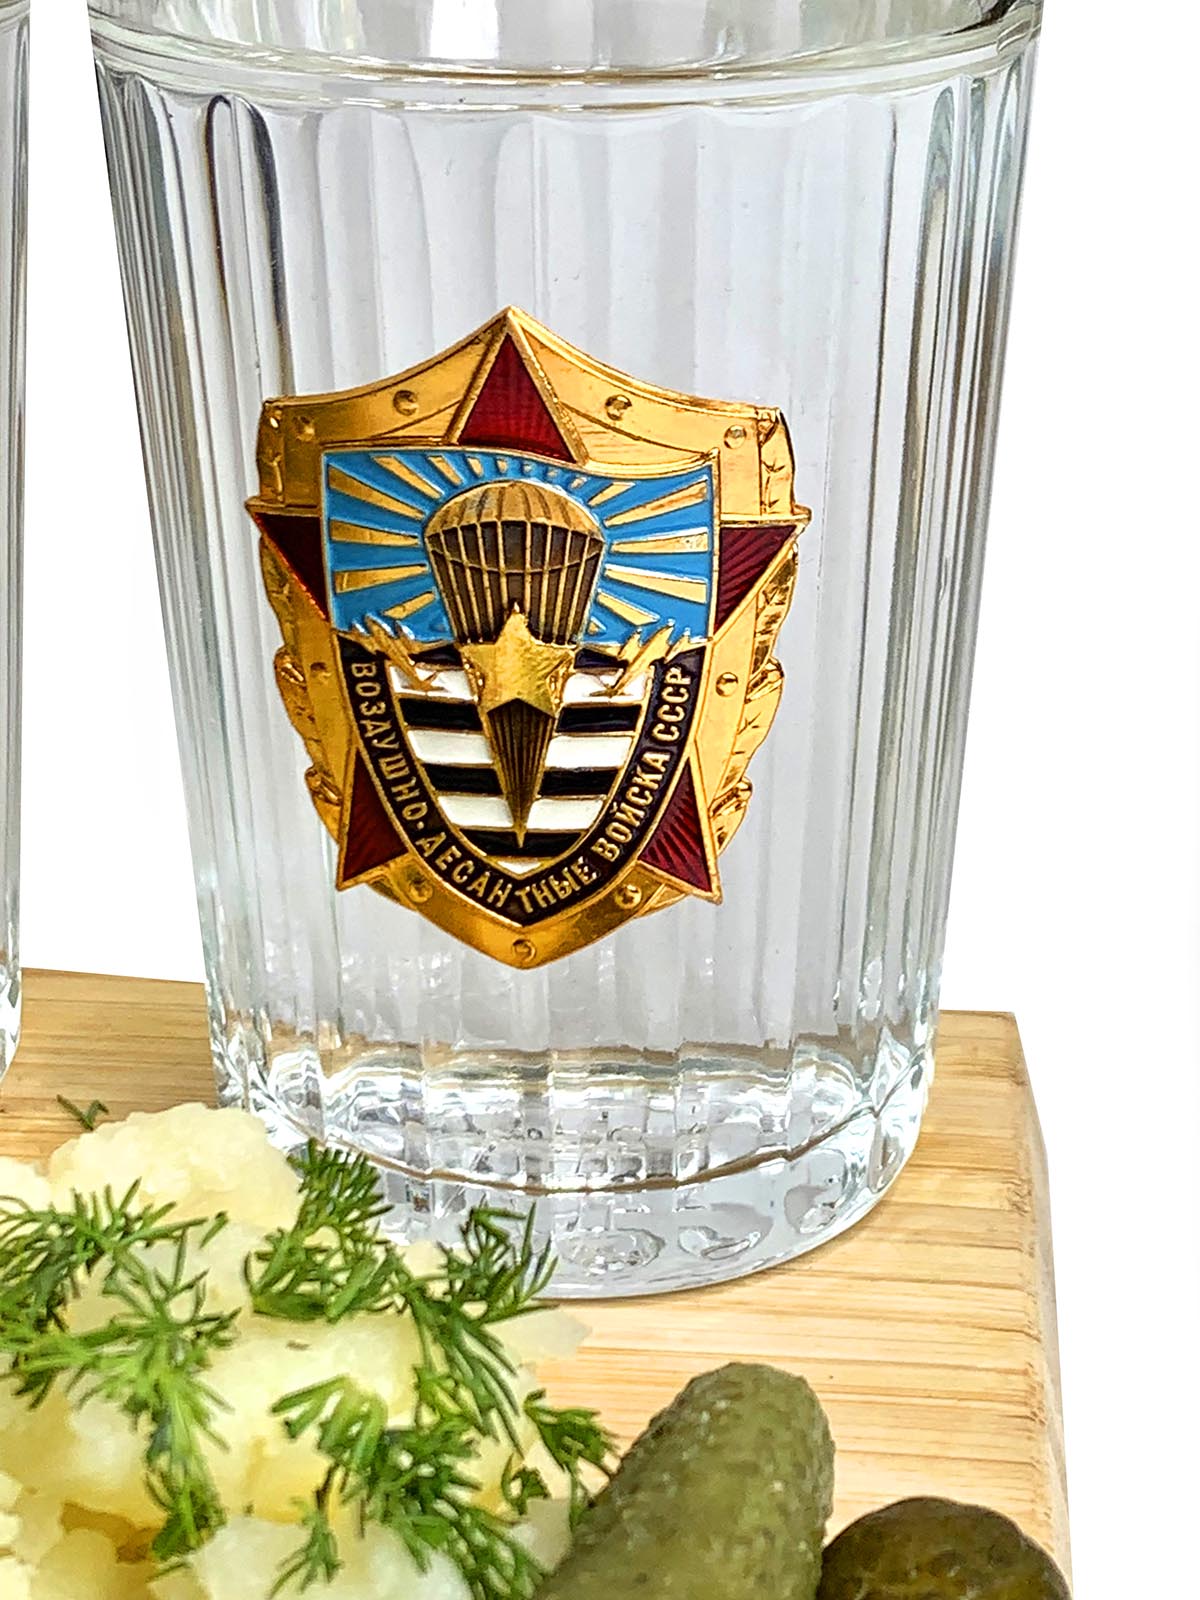 Подарки десантникам – граненые стаканы с символикой ВДВ